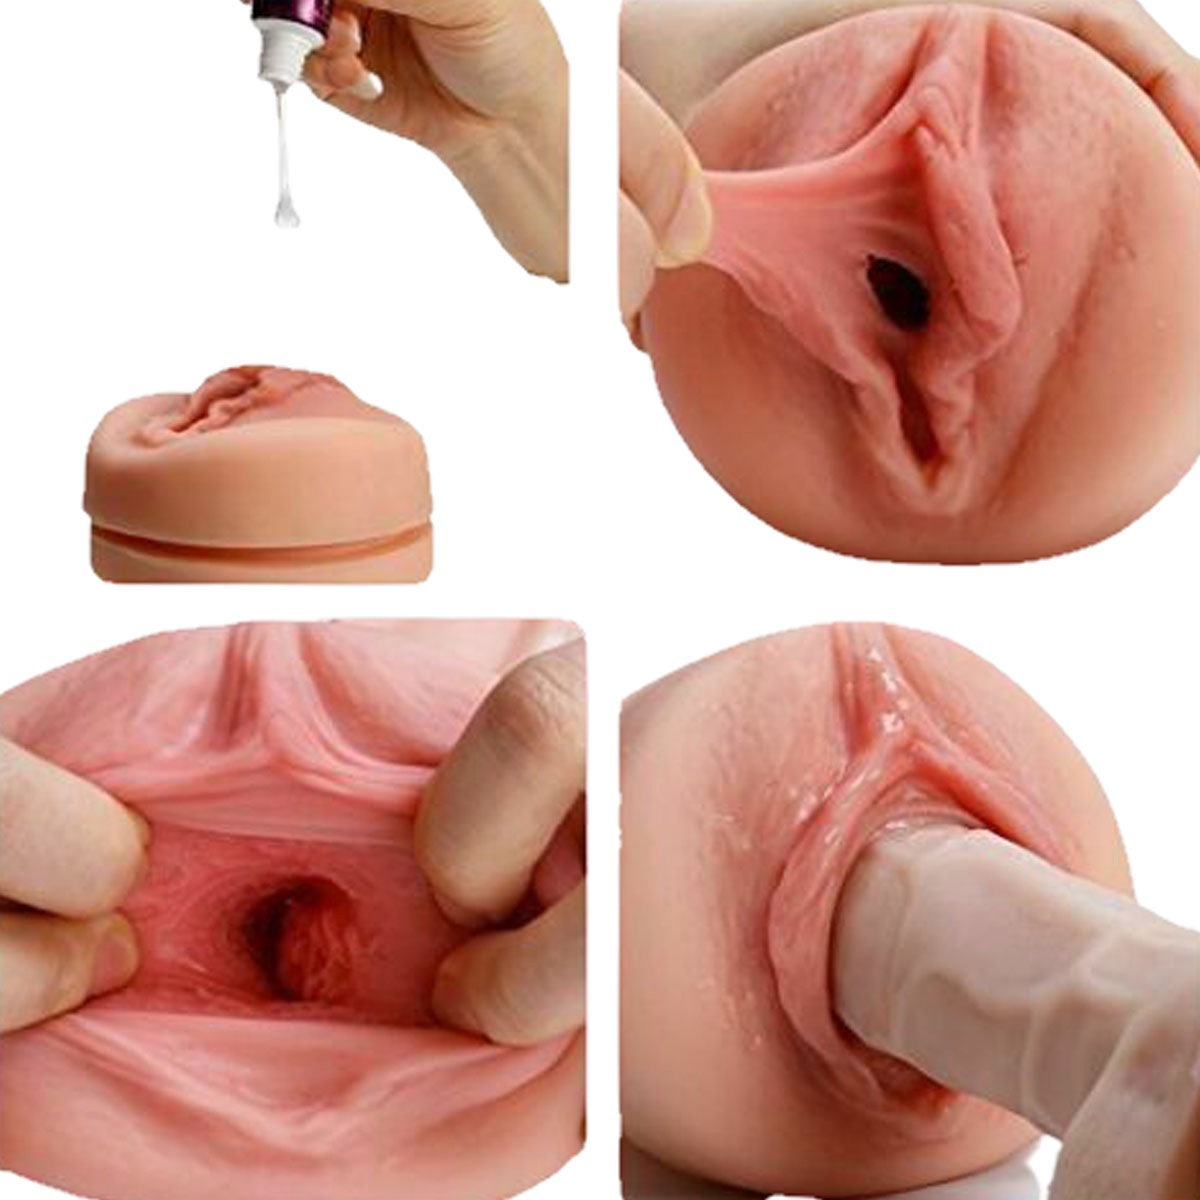 порно искусственная вагина фото 40